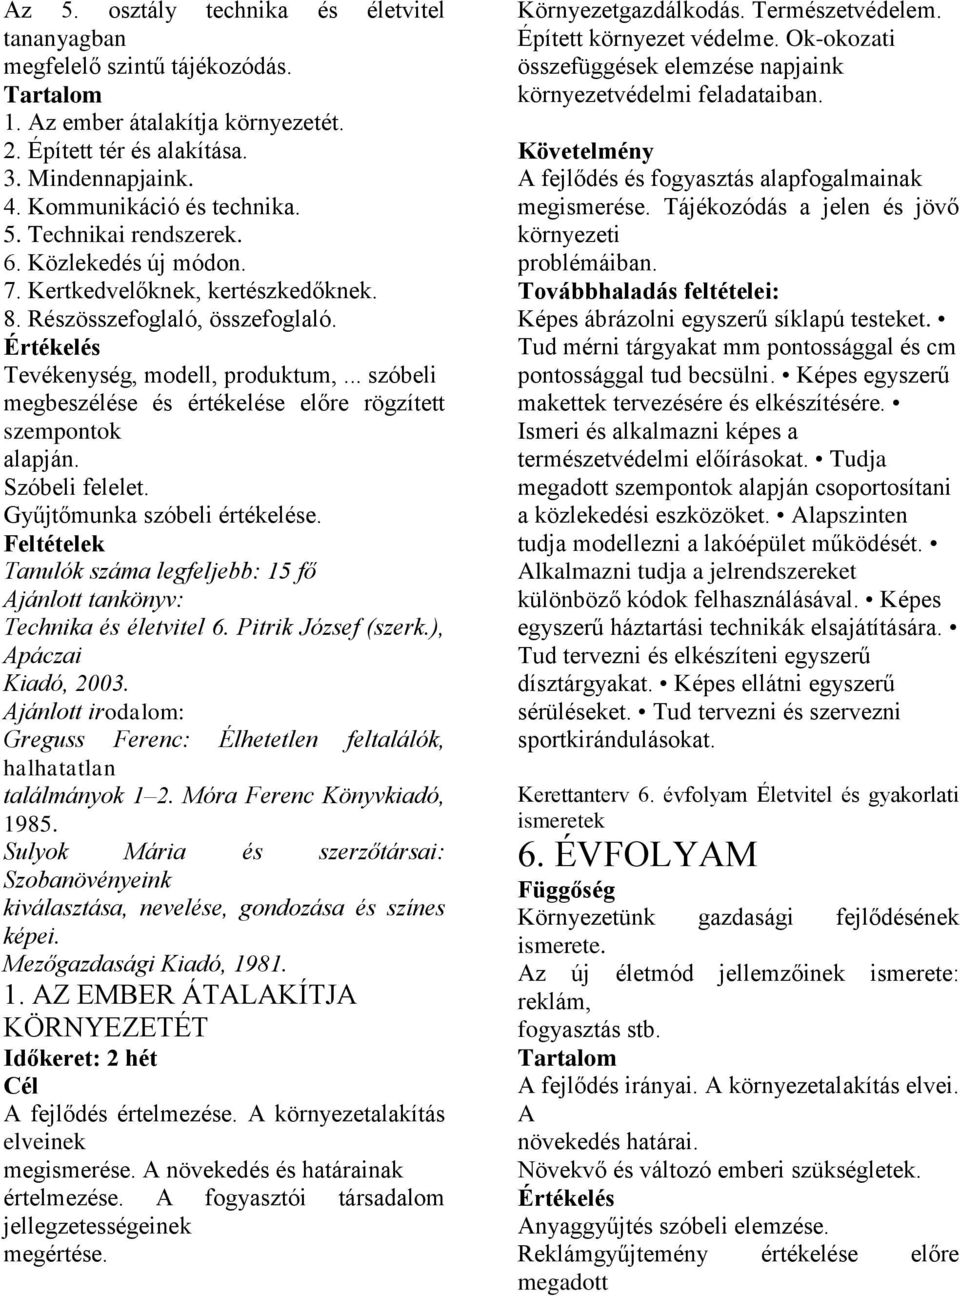 Szóbeli felelet. Gyűjtőmunka szóbeli értékelése. Feltételek Tanulók száma legfeljebb: 15 fő Ajánlott tankönyv: Technika és életvitel 6. Pitrik József (szerk.), Apáczai Kiadó, 2003.